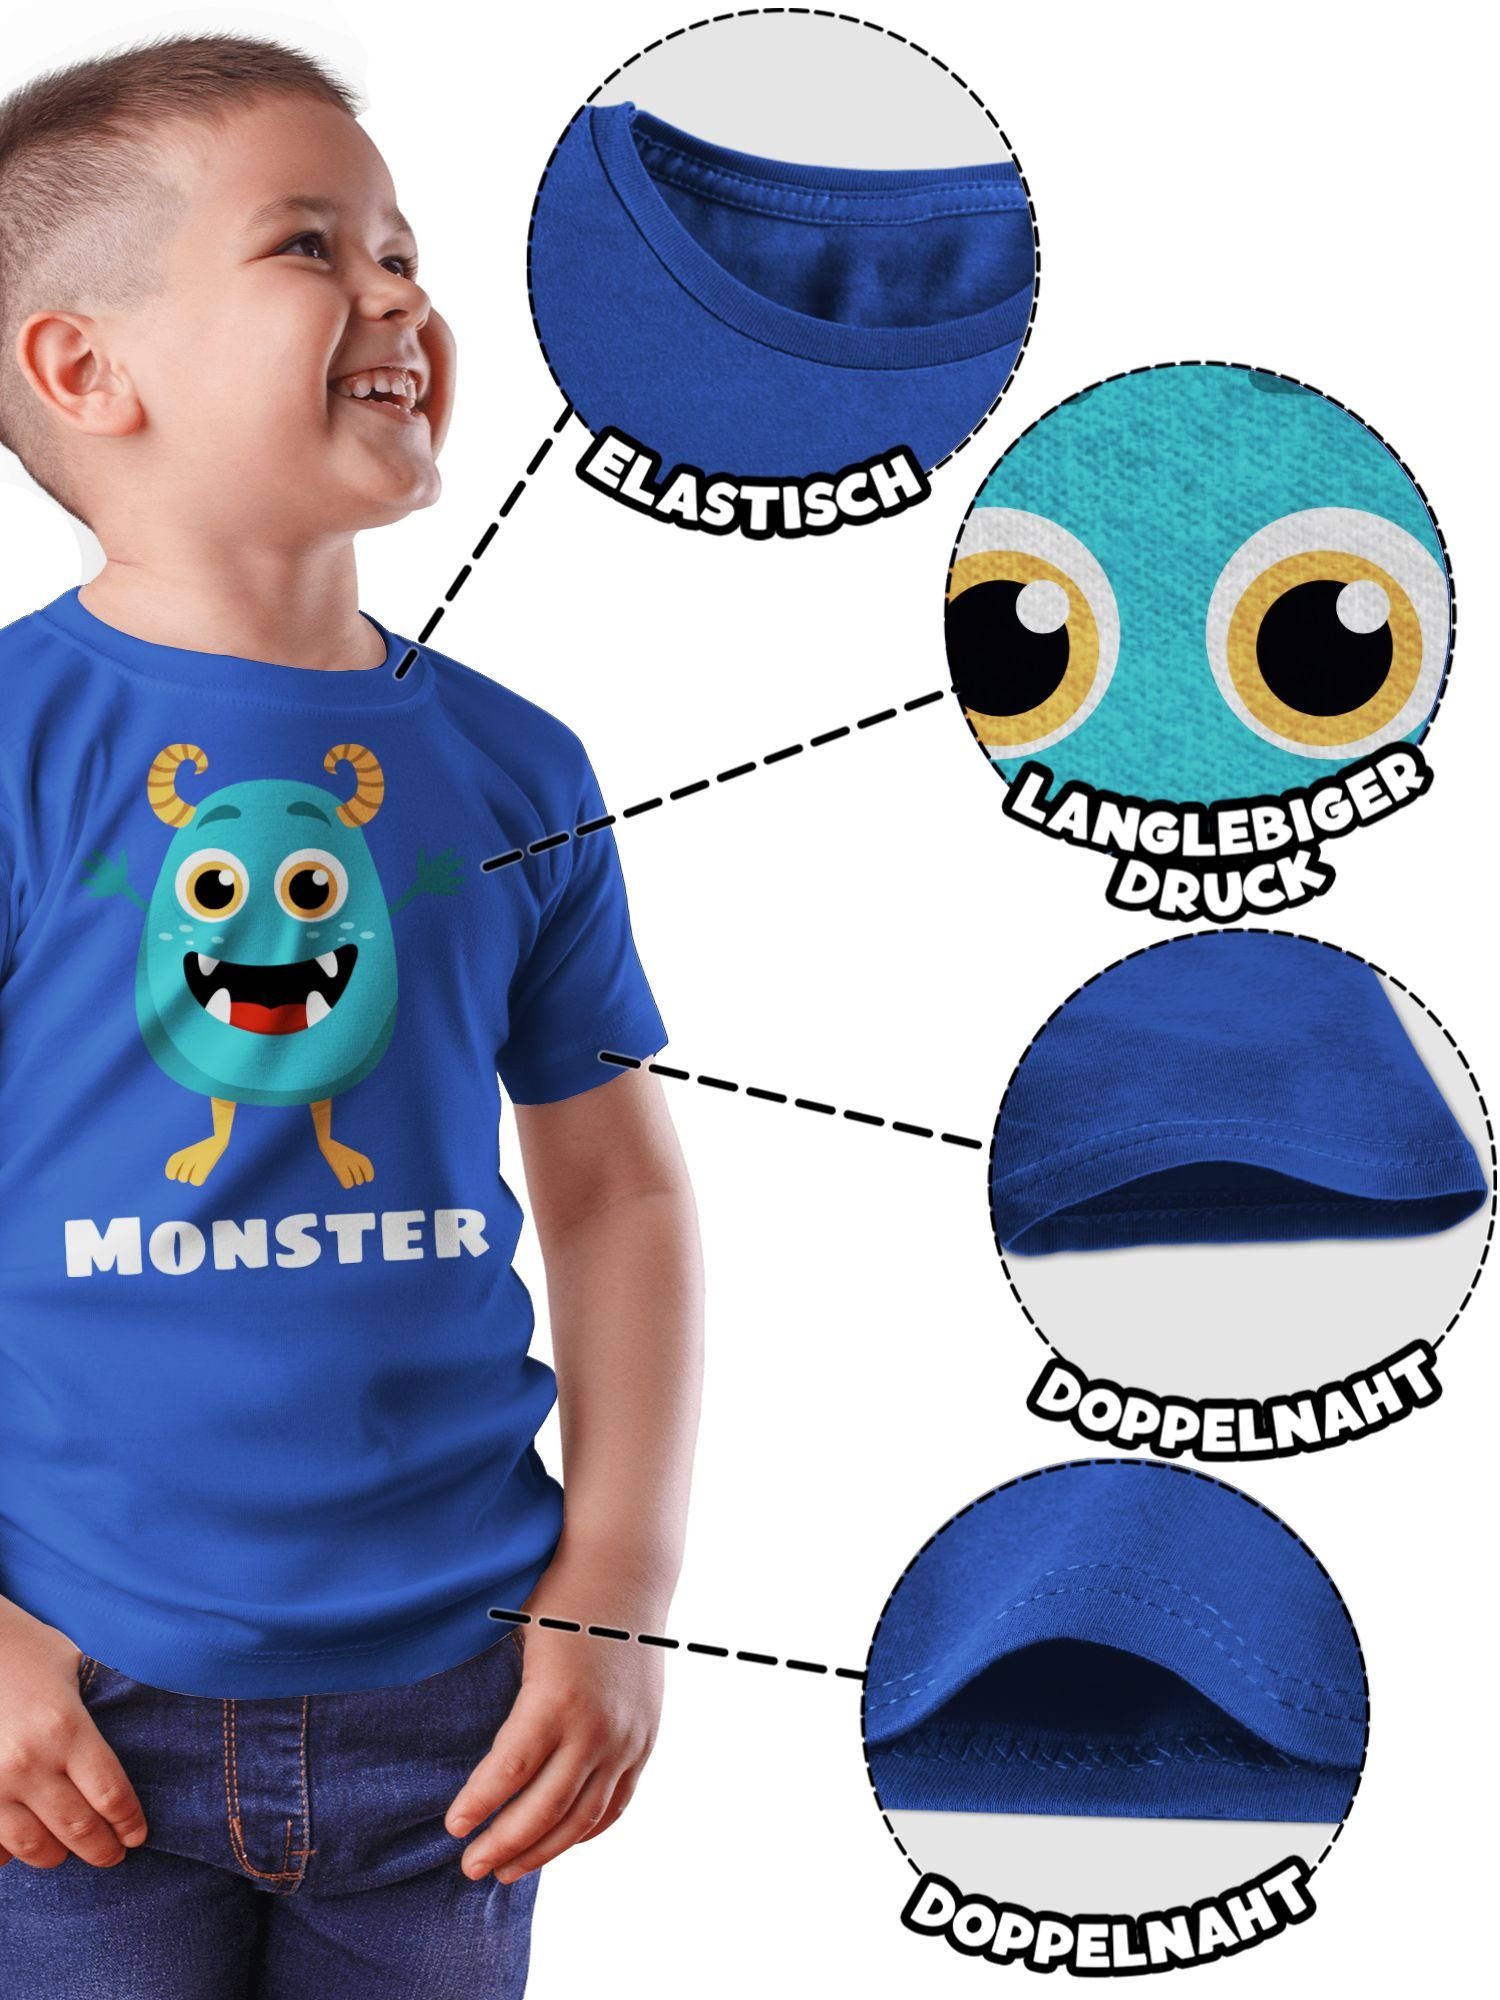 Shirtracer Partner-Look T-Shirt Partner-Look Monster Kind 1 Royalblau Familie Kind